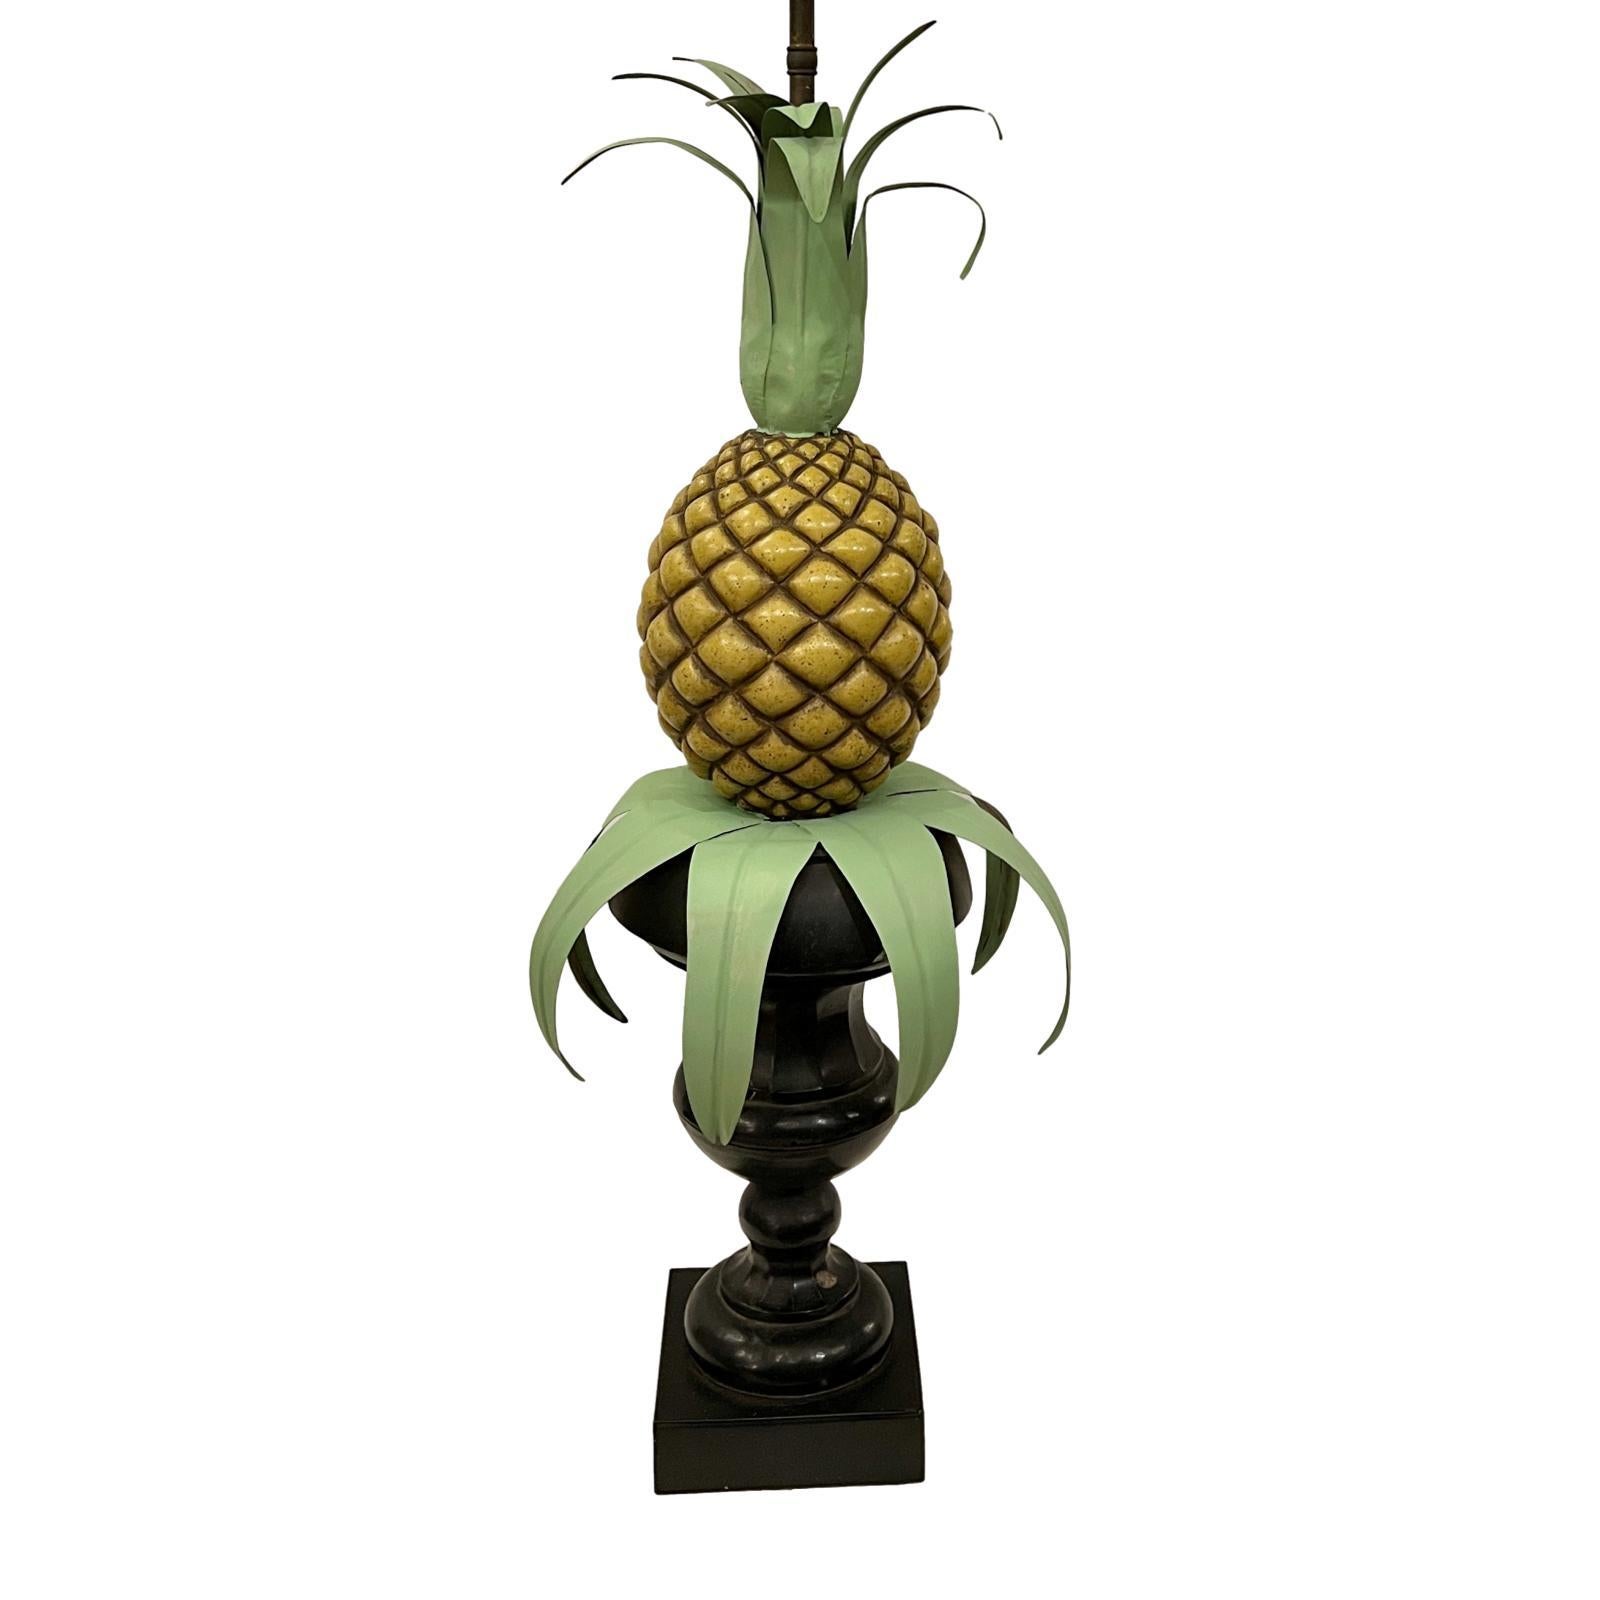 Lampe italienne en métal peint en forme d'ananas, datant des années 1940.

Mesures :
Hauteur du corps : 29
Hauteur de l'abat-jour : 39